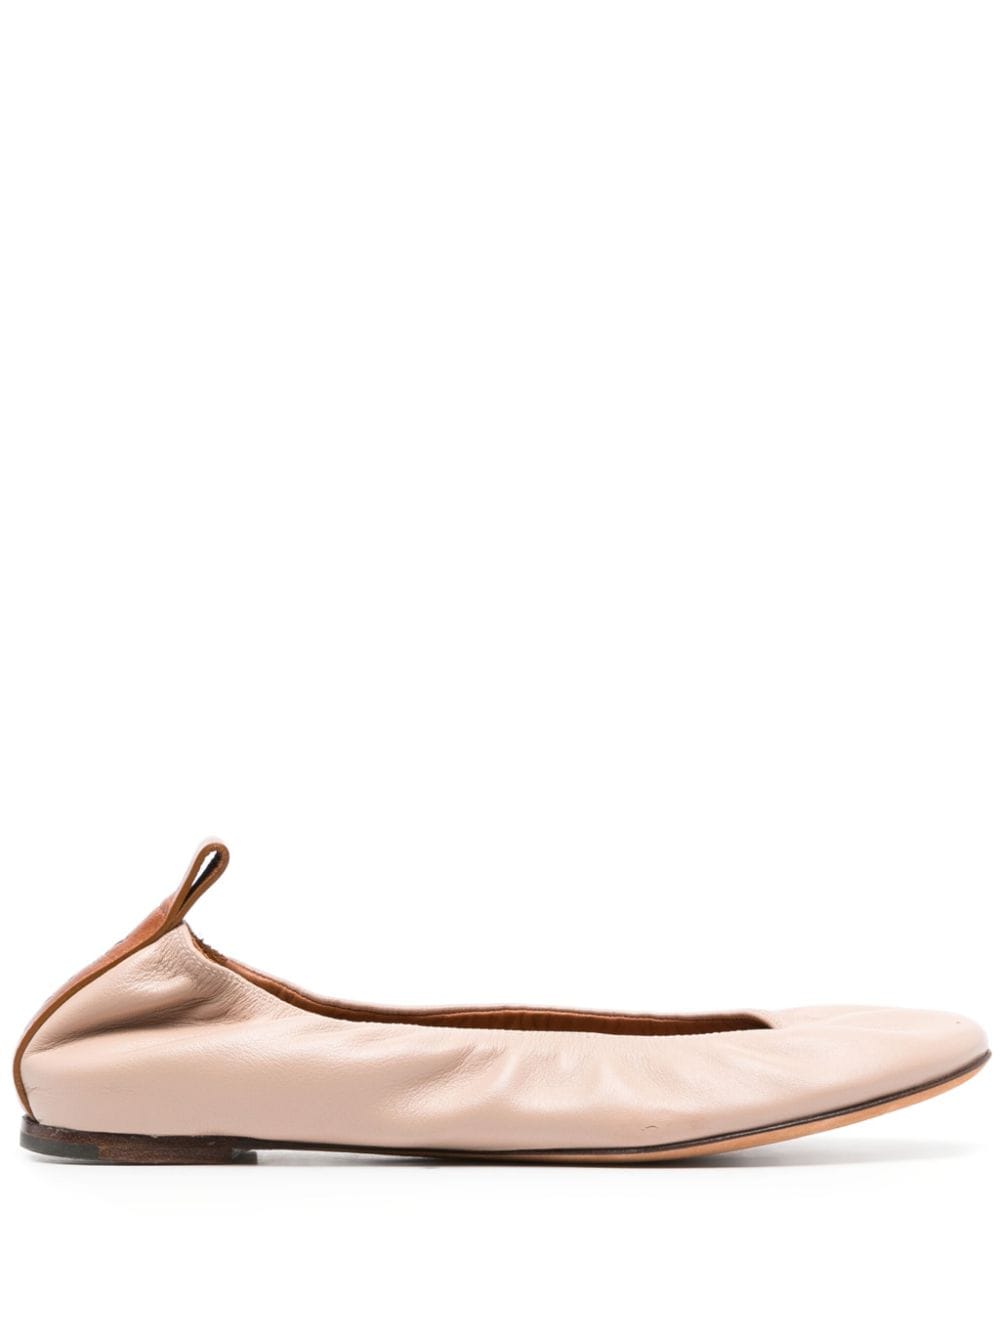 Lanvin leather ballerina shoes - Pink von Lanvin